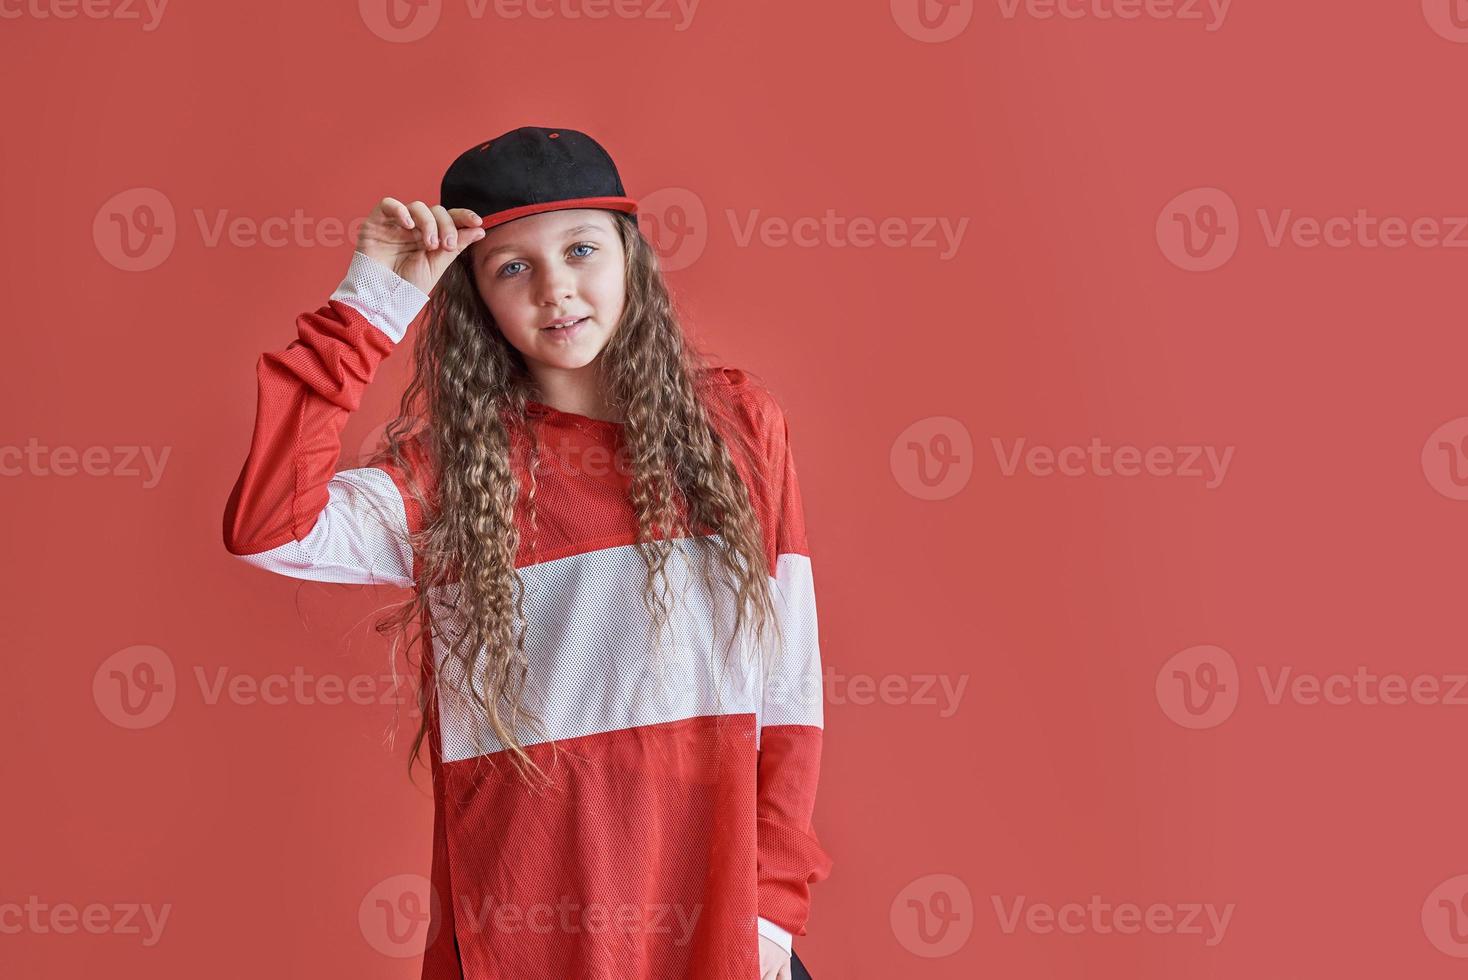 giovane donna urbana che balla su sfondo rosso, moderna e sottile ragazza adolescente in stile hip-hop foto